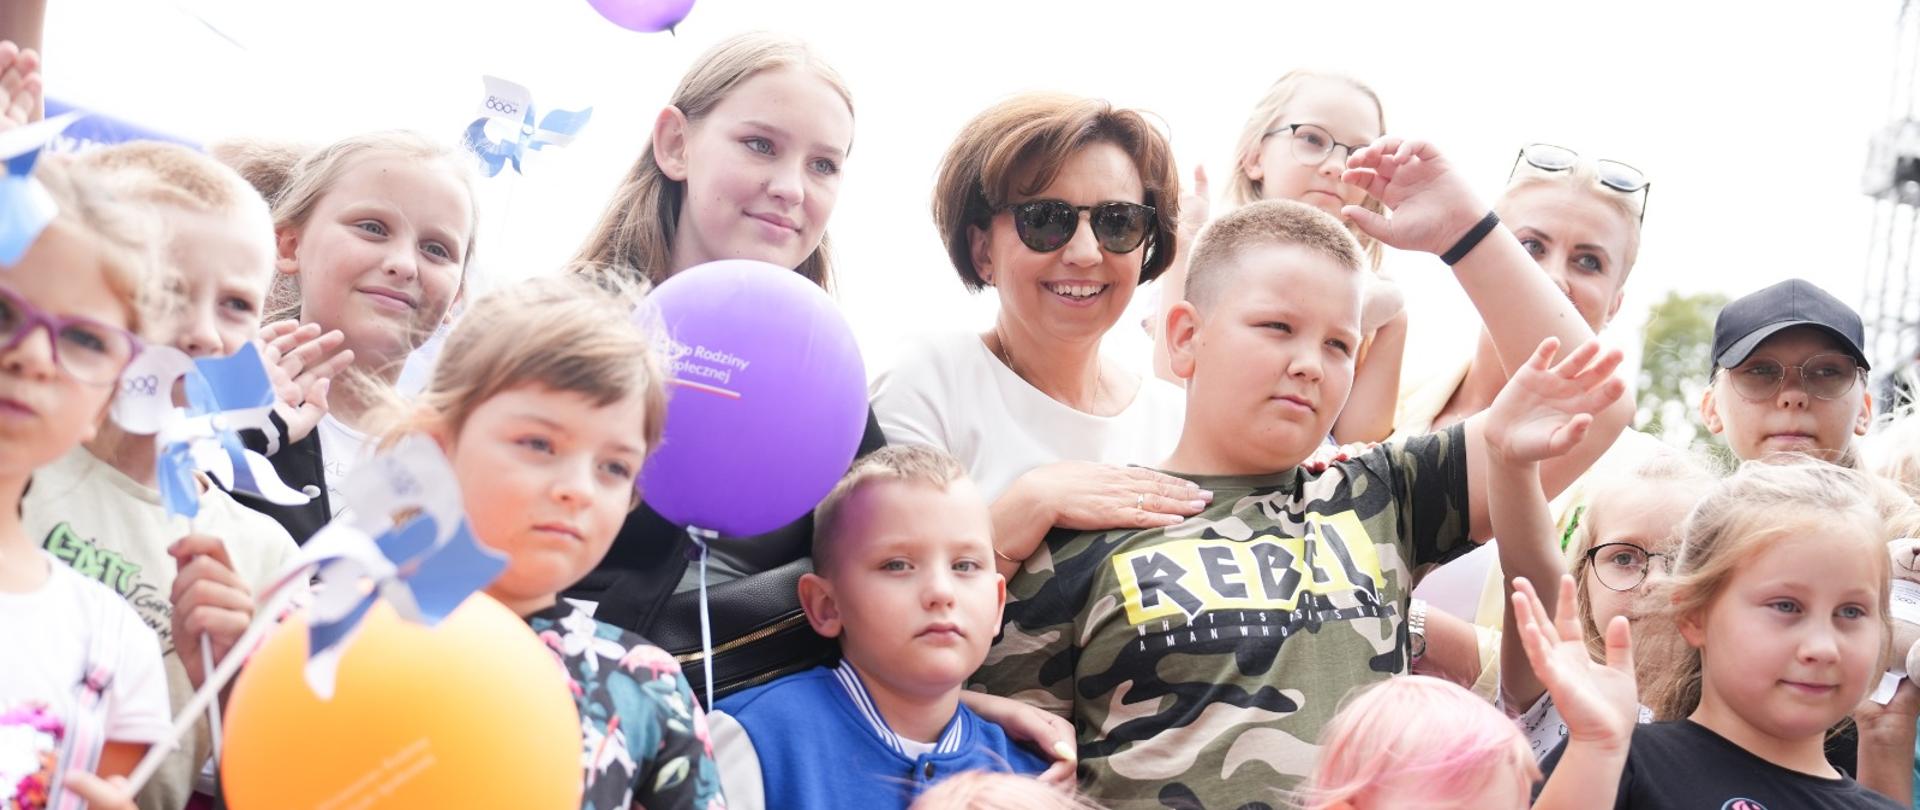 Marlena Maląg, minister rodziny i polityki społecznej z dziećmi